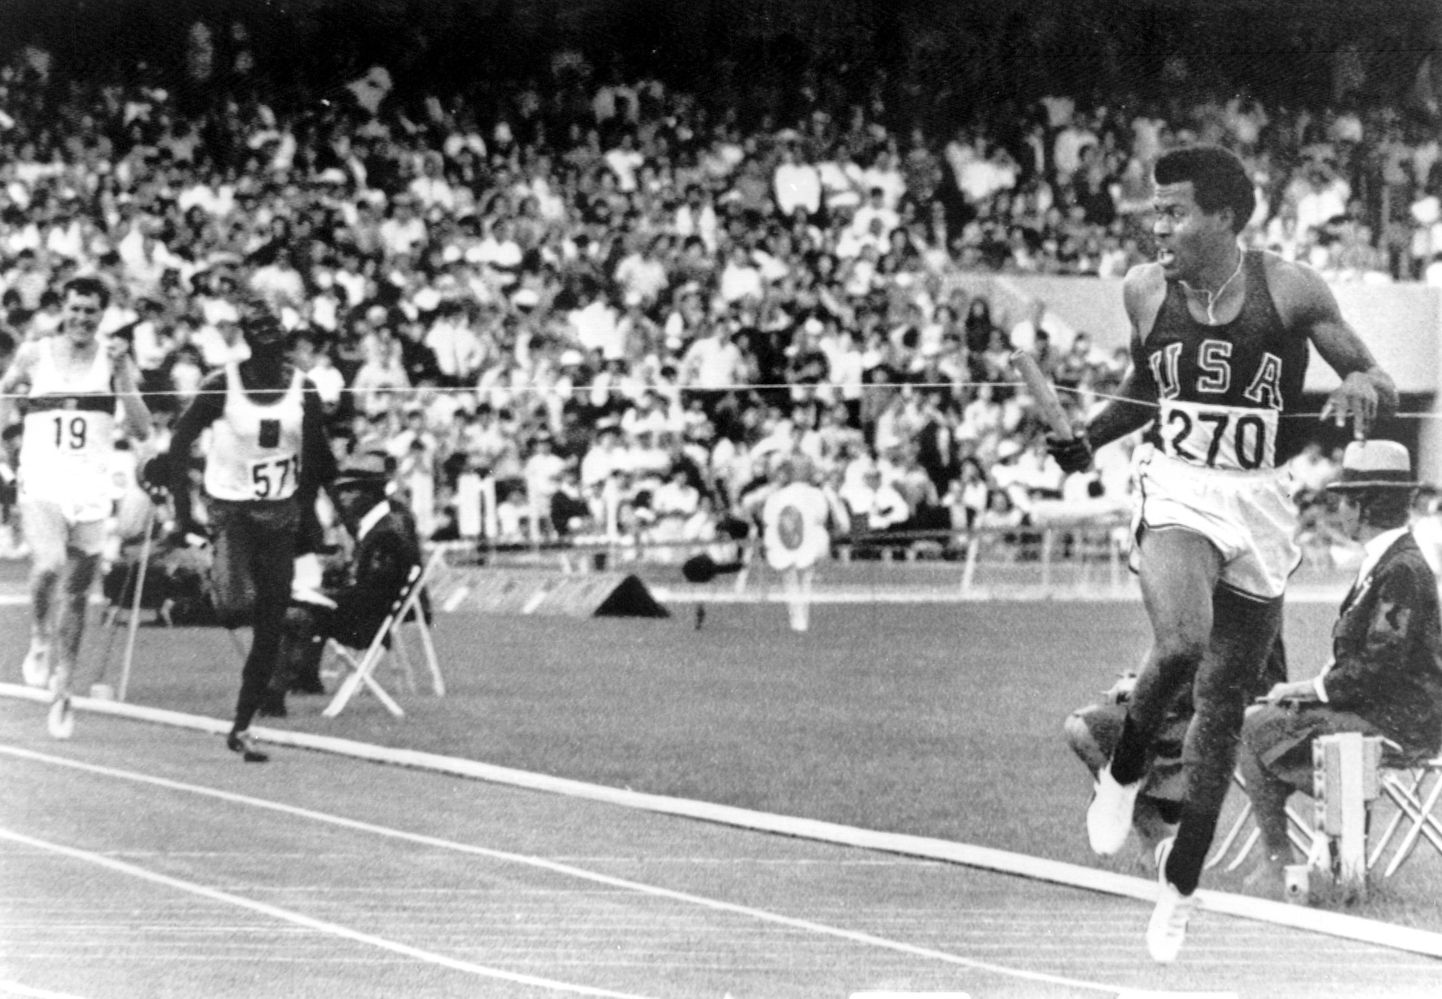 Keenia ankrumees Daniel Rusha (571) vedas Mexico olümpial Keenia teatehõbedale. Jooksu võitis ülekaalukalt USA, kelle viimast vahetust jooksis Lee Evans (270).